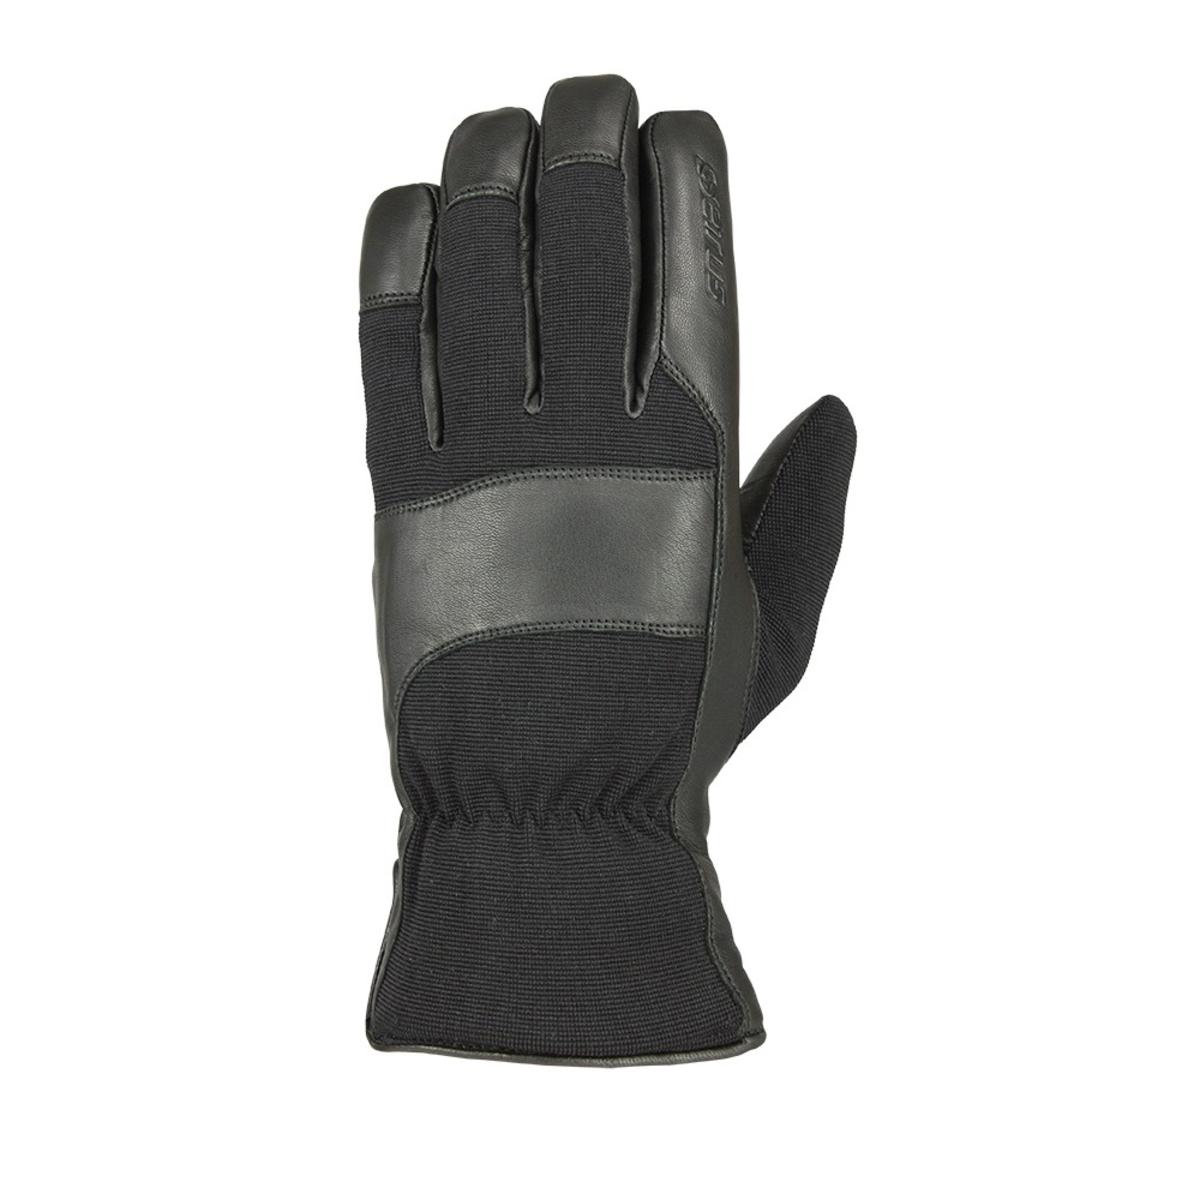 Seirus HWS Heatwave Workman Leather Gloves